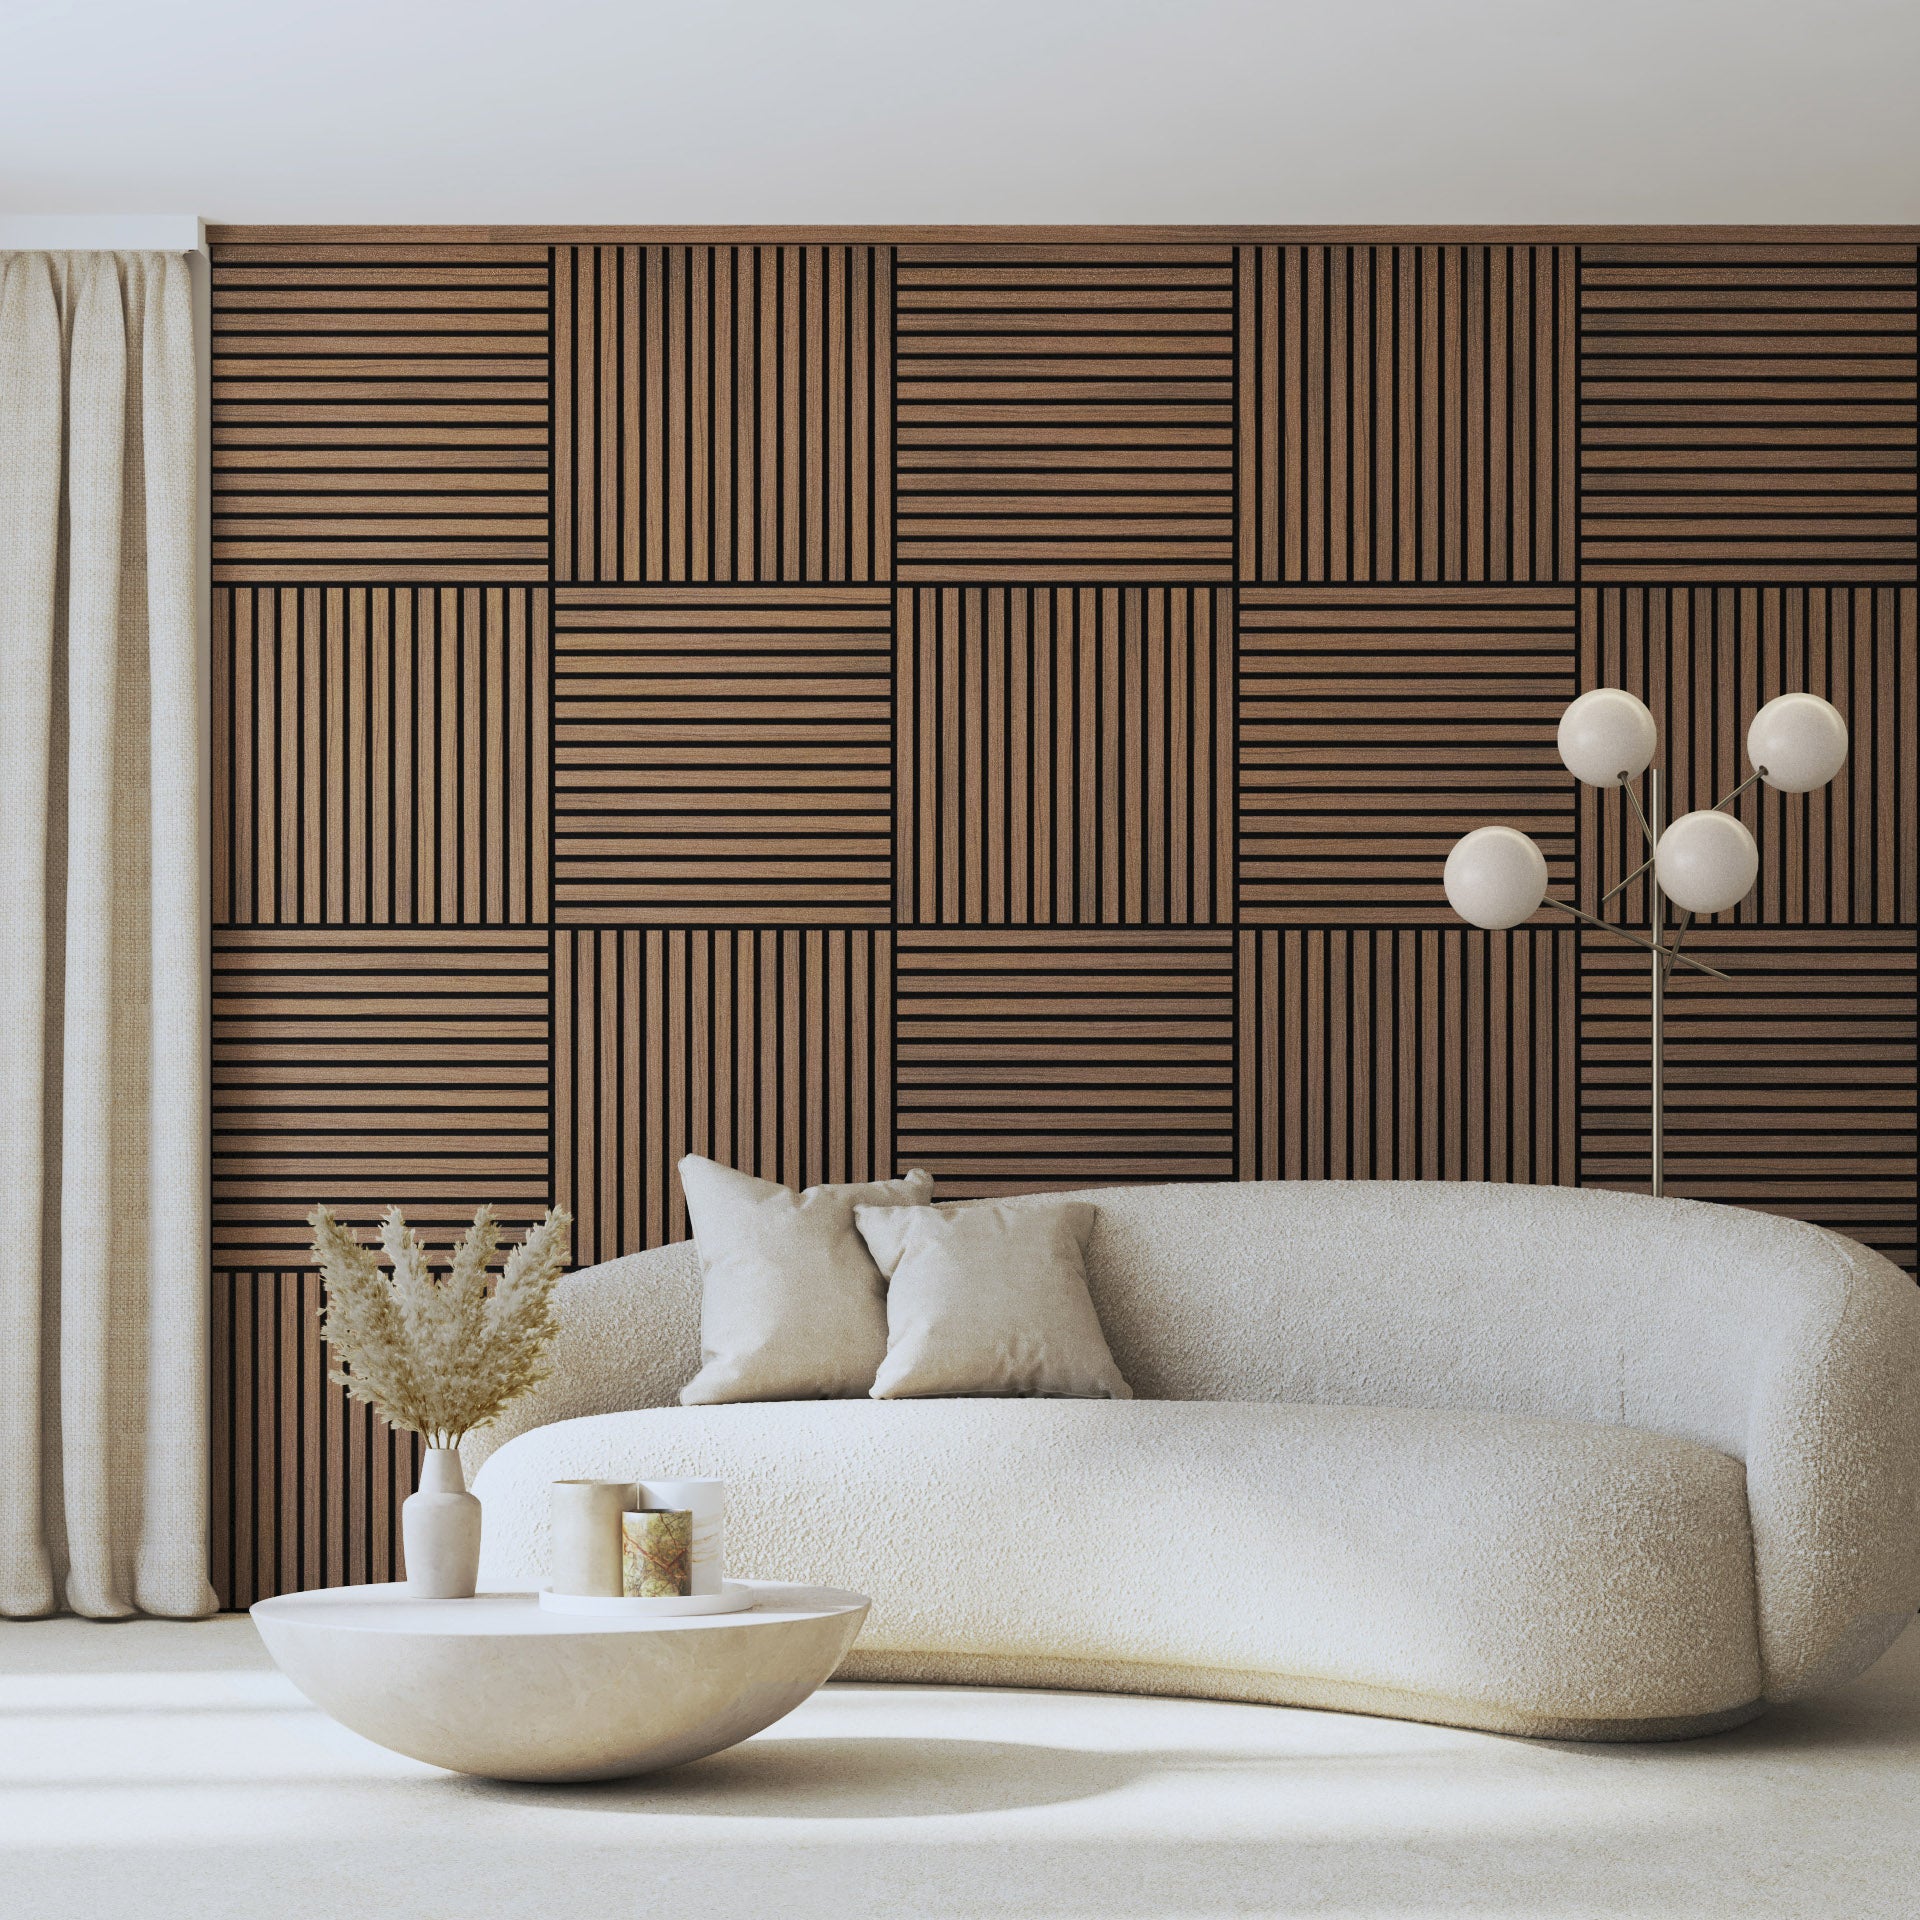 Trepanel® Walnut Brown Half Wall Wood Slat Panels